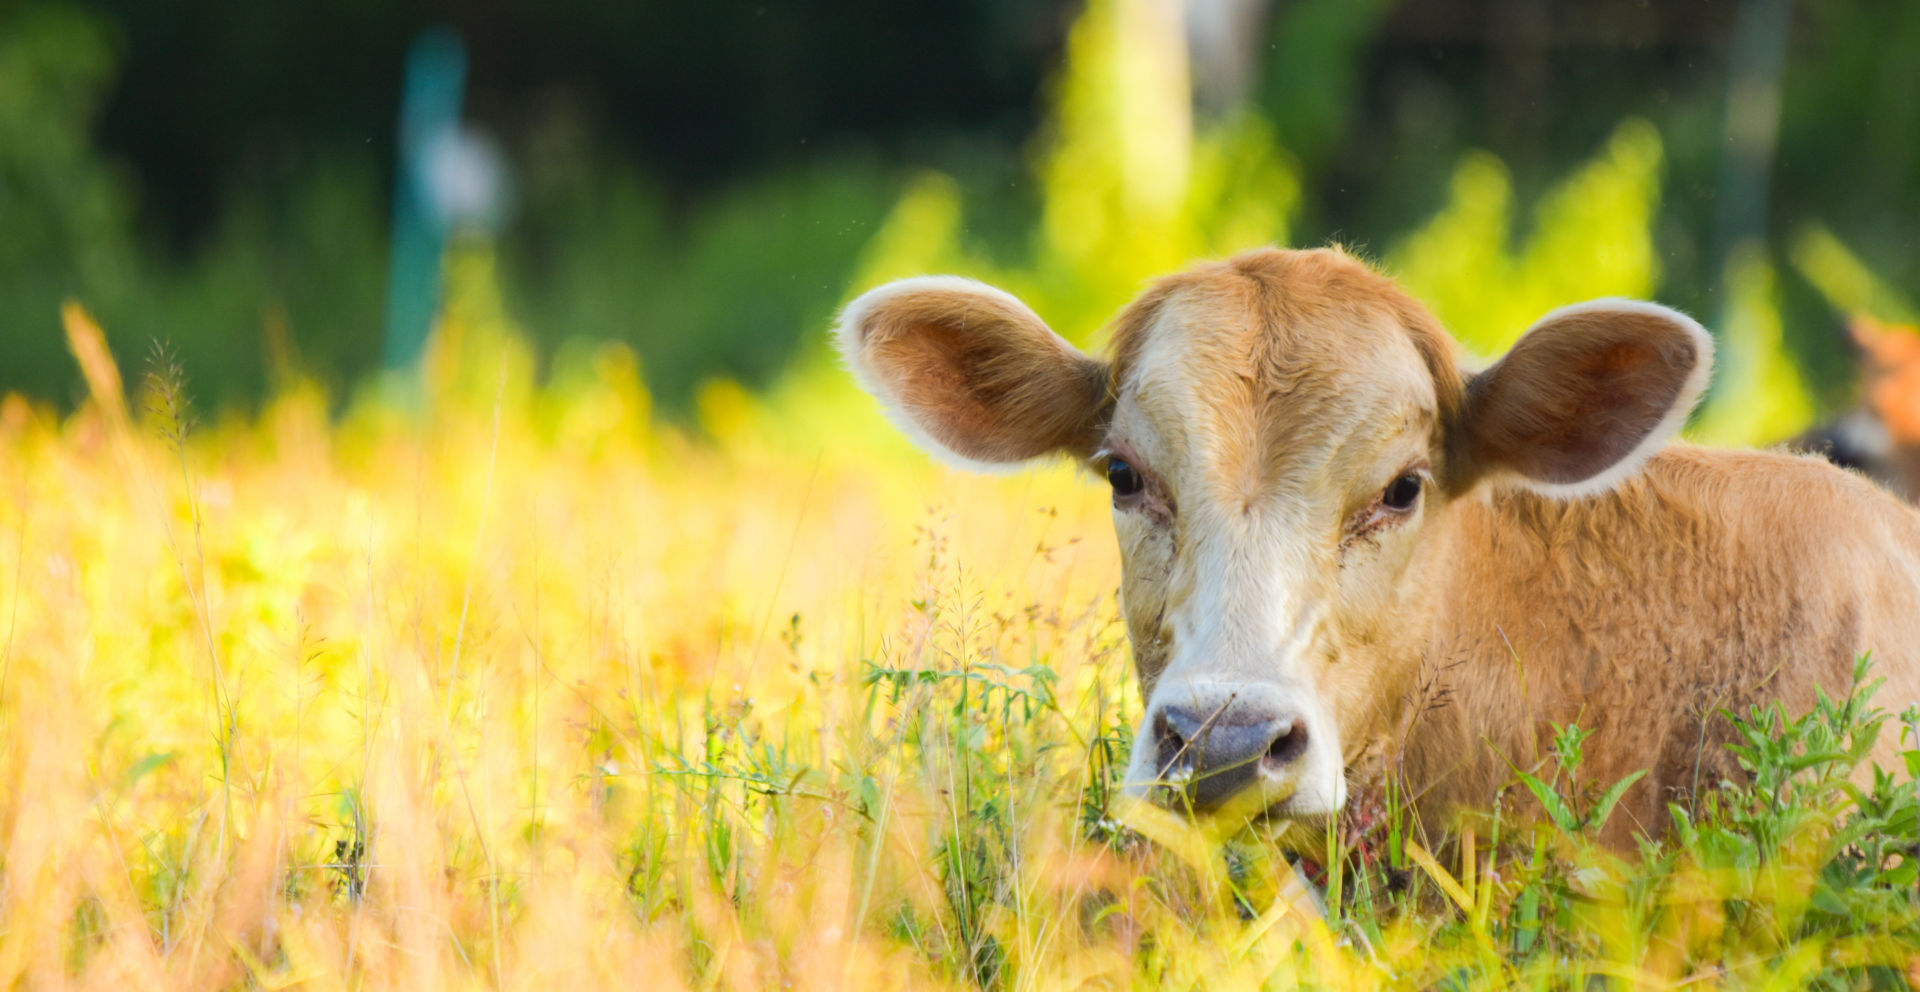 Tuotantoeläin lehmä loikoilee pellolla